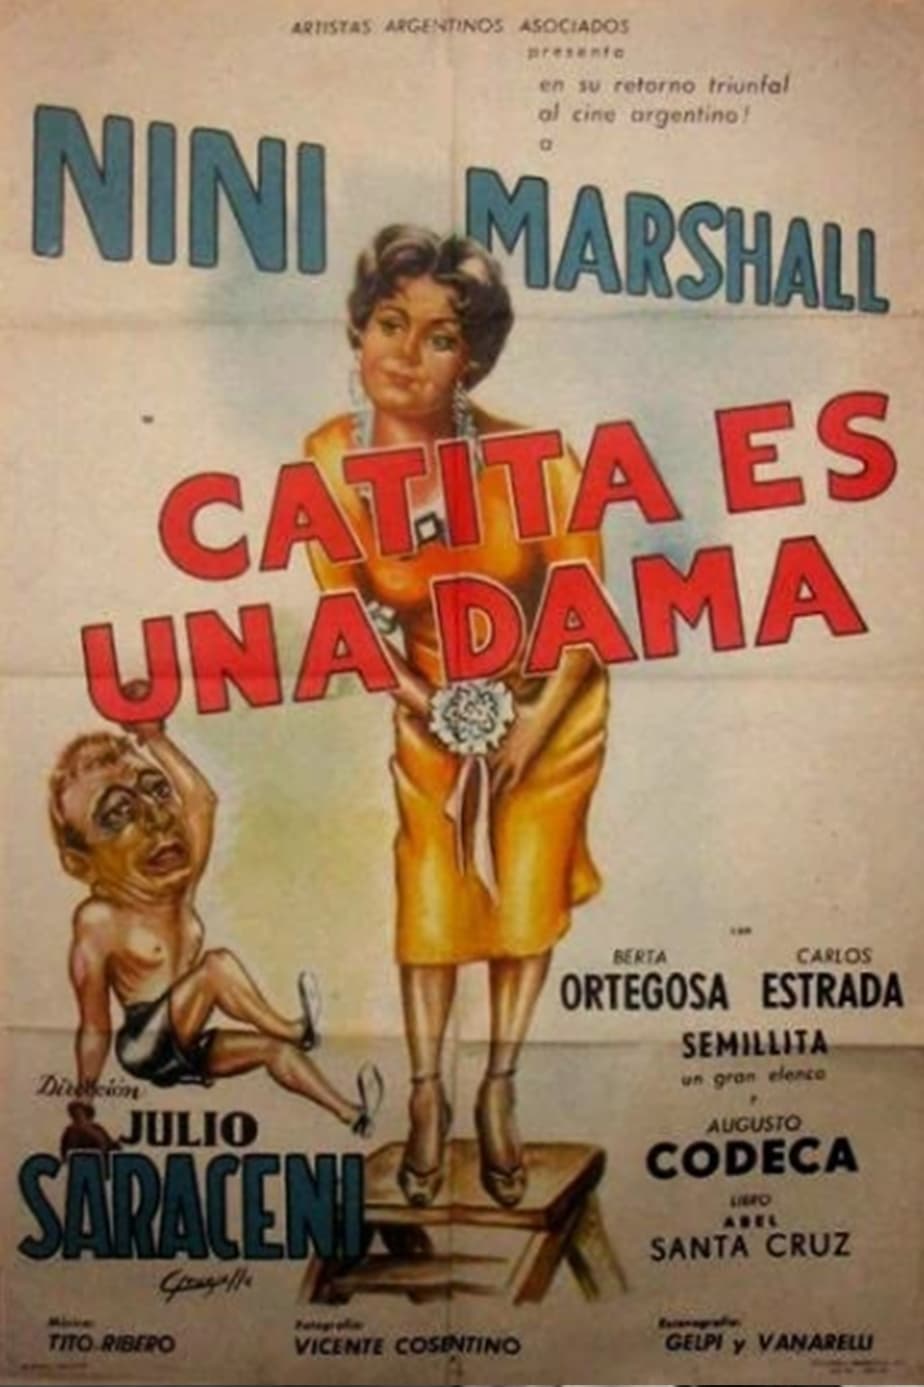 Catita es una dama (1956)